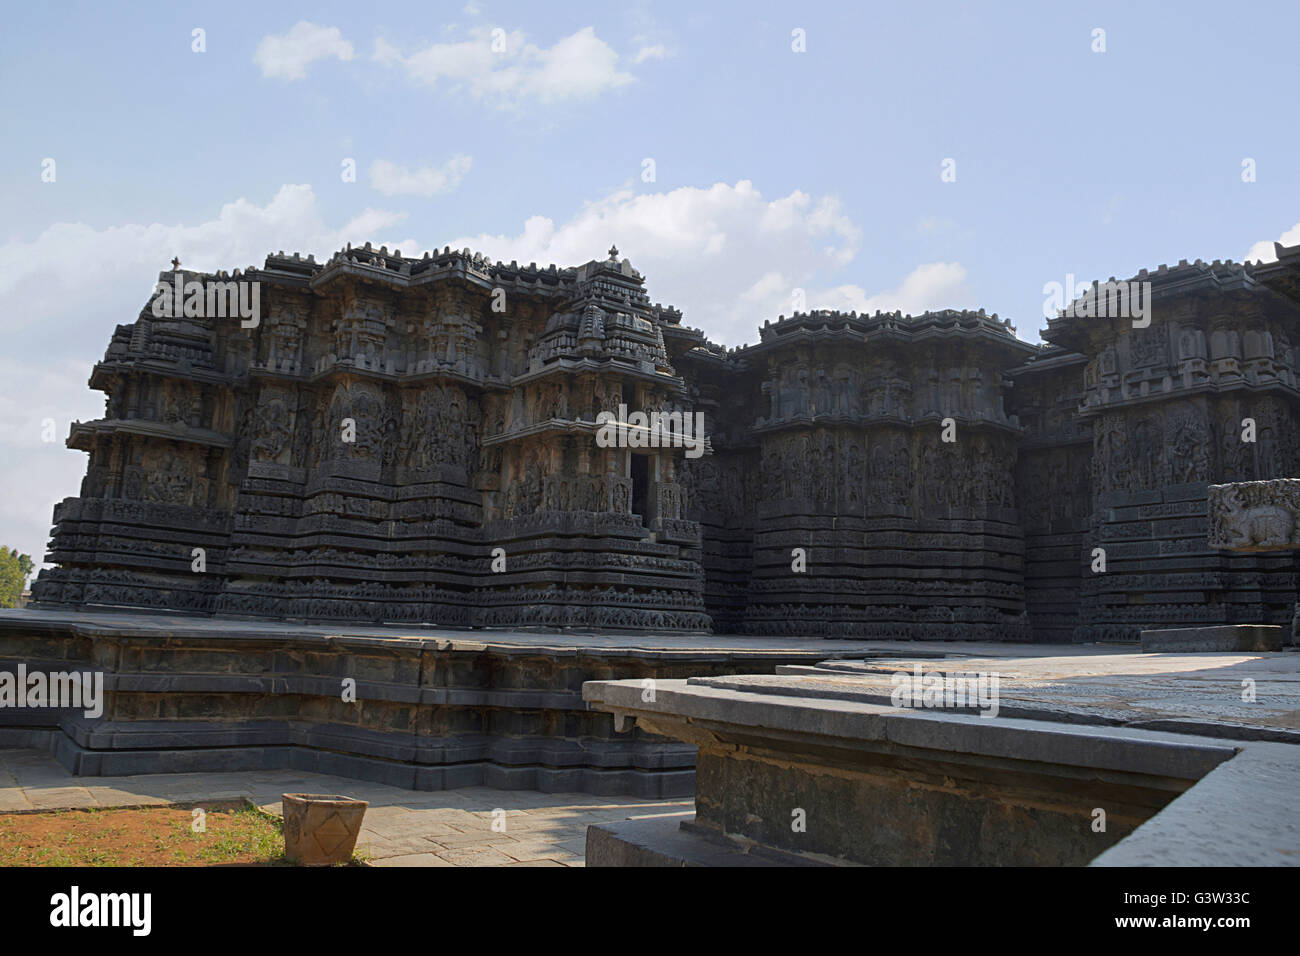 Façade et panneau mural orné, secours, halebidu temple hoysaleshwara, Karnataka, Inde. vue depuis le sud-ouest. Banque D'Images